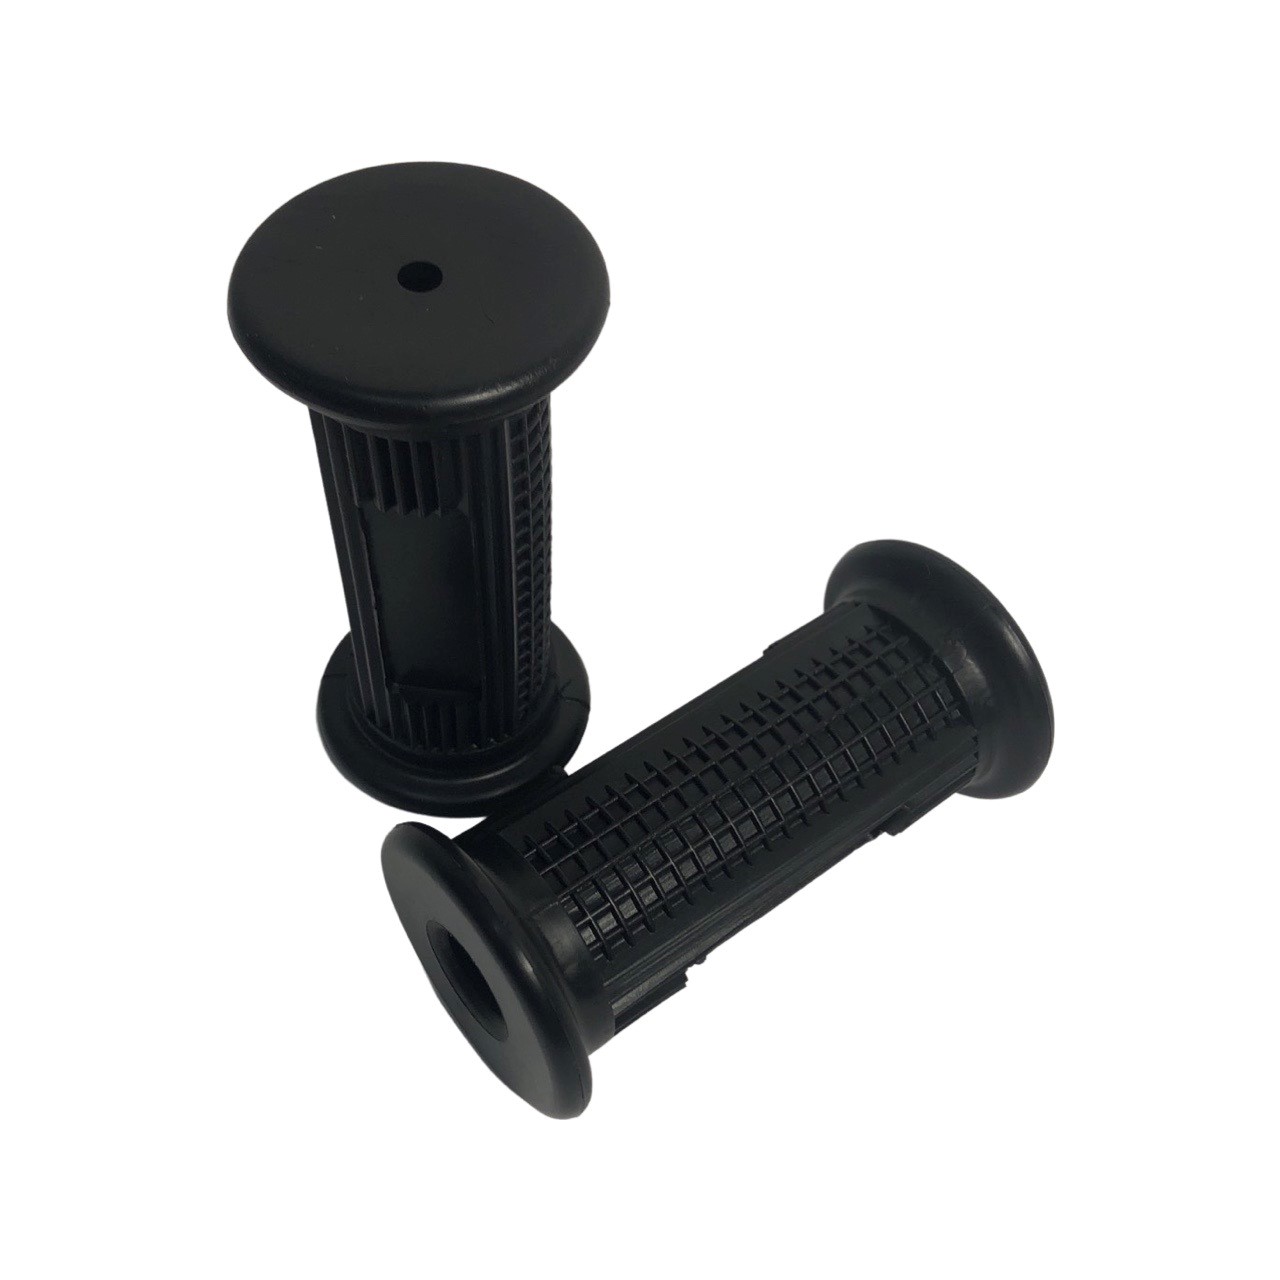 BROMFIETS UNIVERSEEL/PUCH Voetrust rubber set voor voetsteun 16mm voor 6269 Onderbouw rubber zwart rond